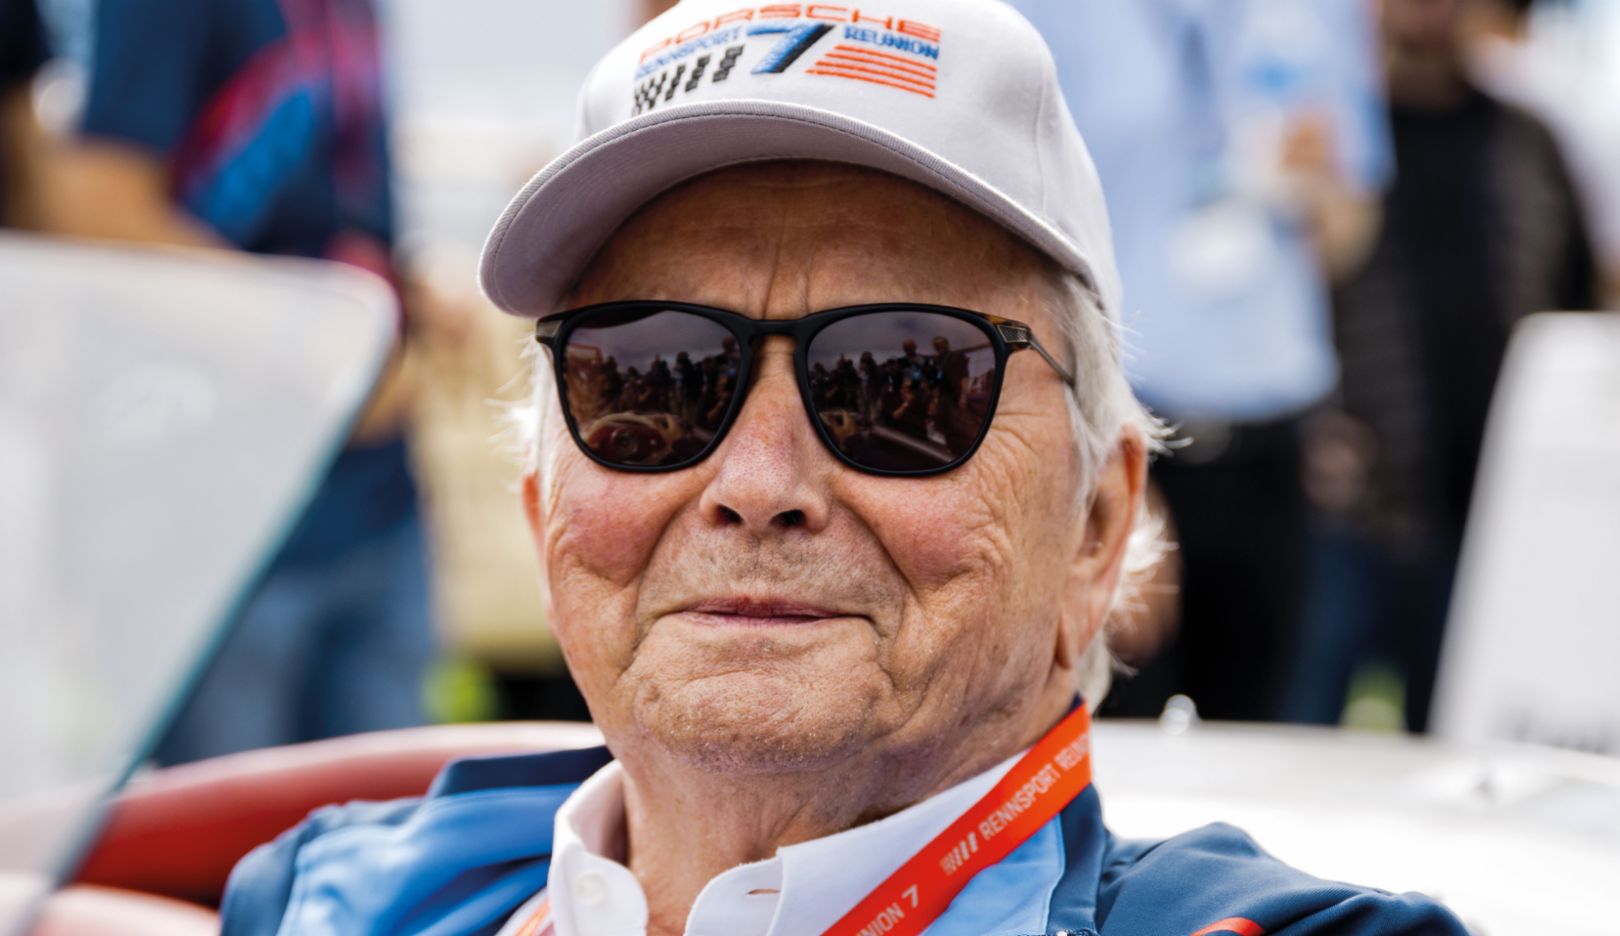 «Mio padre aveva un sogno quando iniziò a costruire auto sportive nel 1948. Oggi possiamo vedere cosa ne è stato di quel sogno.» Dr. Wolfgang Porsche